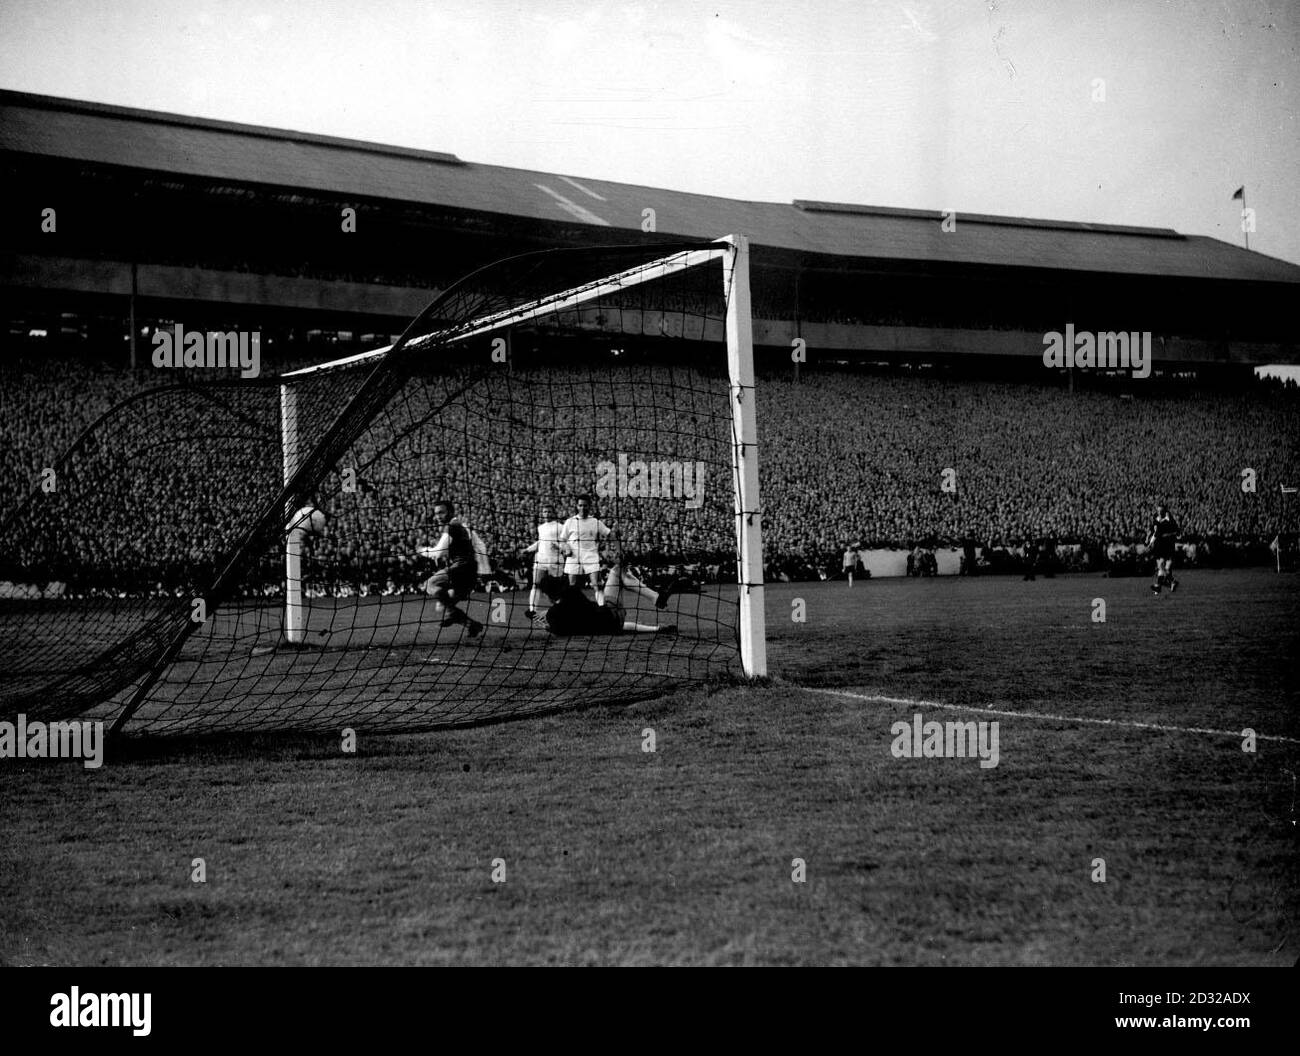 1960: Premier but pour Eintracht Frankfurt - marqué par Kress- lors de la finale de la coupe d'Europe contre le Real Madrid à Hampden Park, Glasgow. (NÉGATIF D'ORIGINE LÉGÈREMENT ENDOMMAGÉ). Banque D'Images